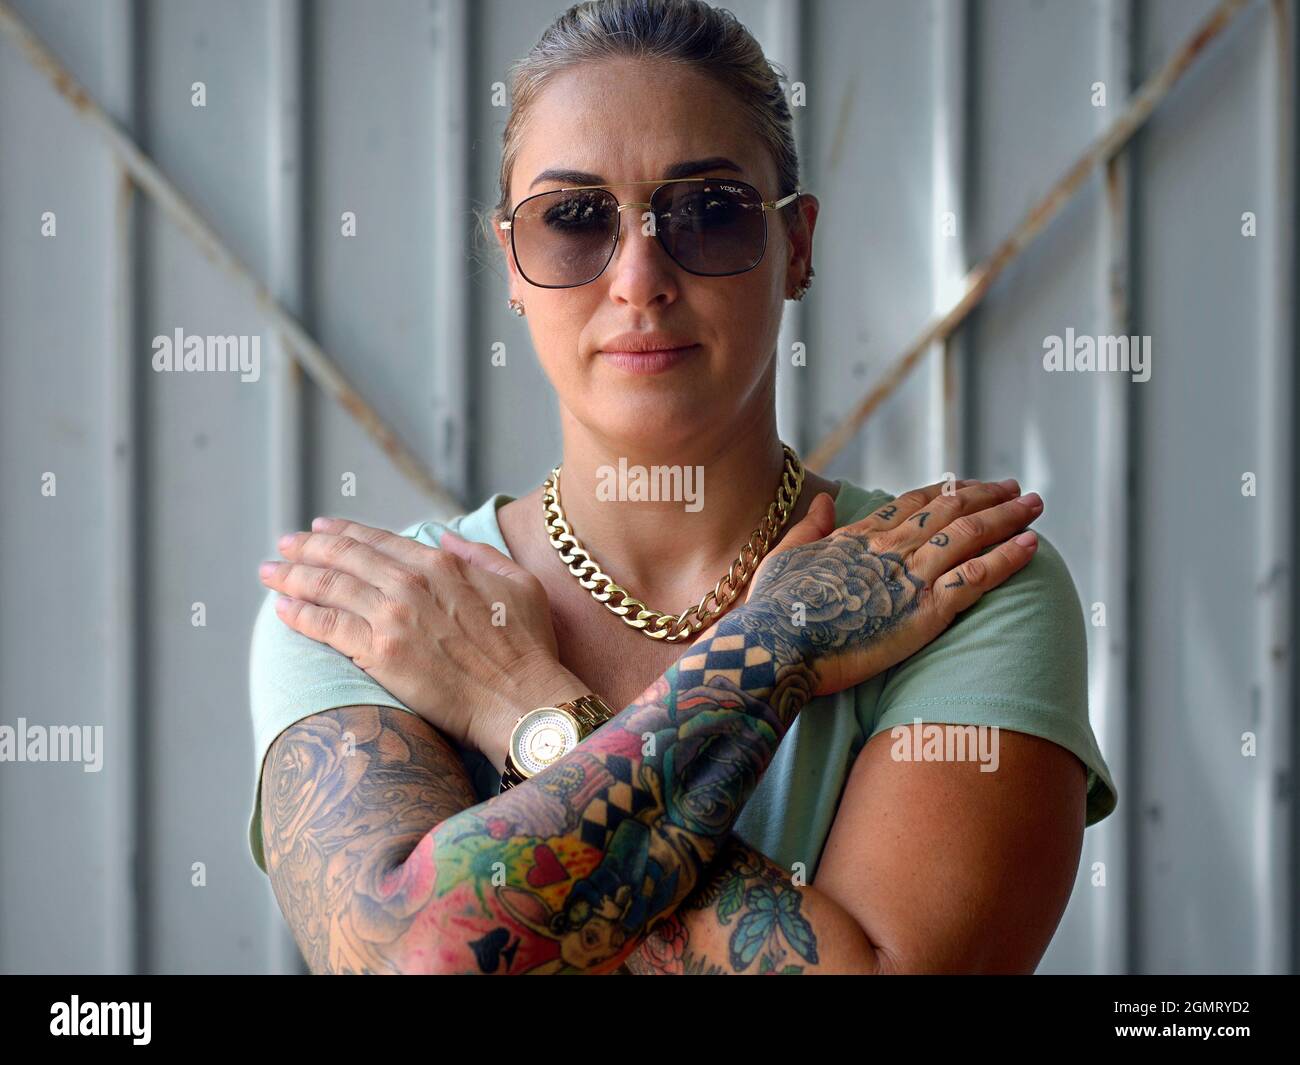 Belle confiante saine jeune femme américaine caucasienne avec des lunettes de soleil croise ses bras et affiche ses beaux tatouages artistiques colorés de bras. Banque D'Images